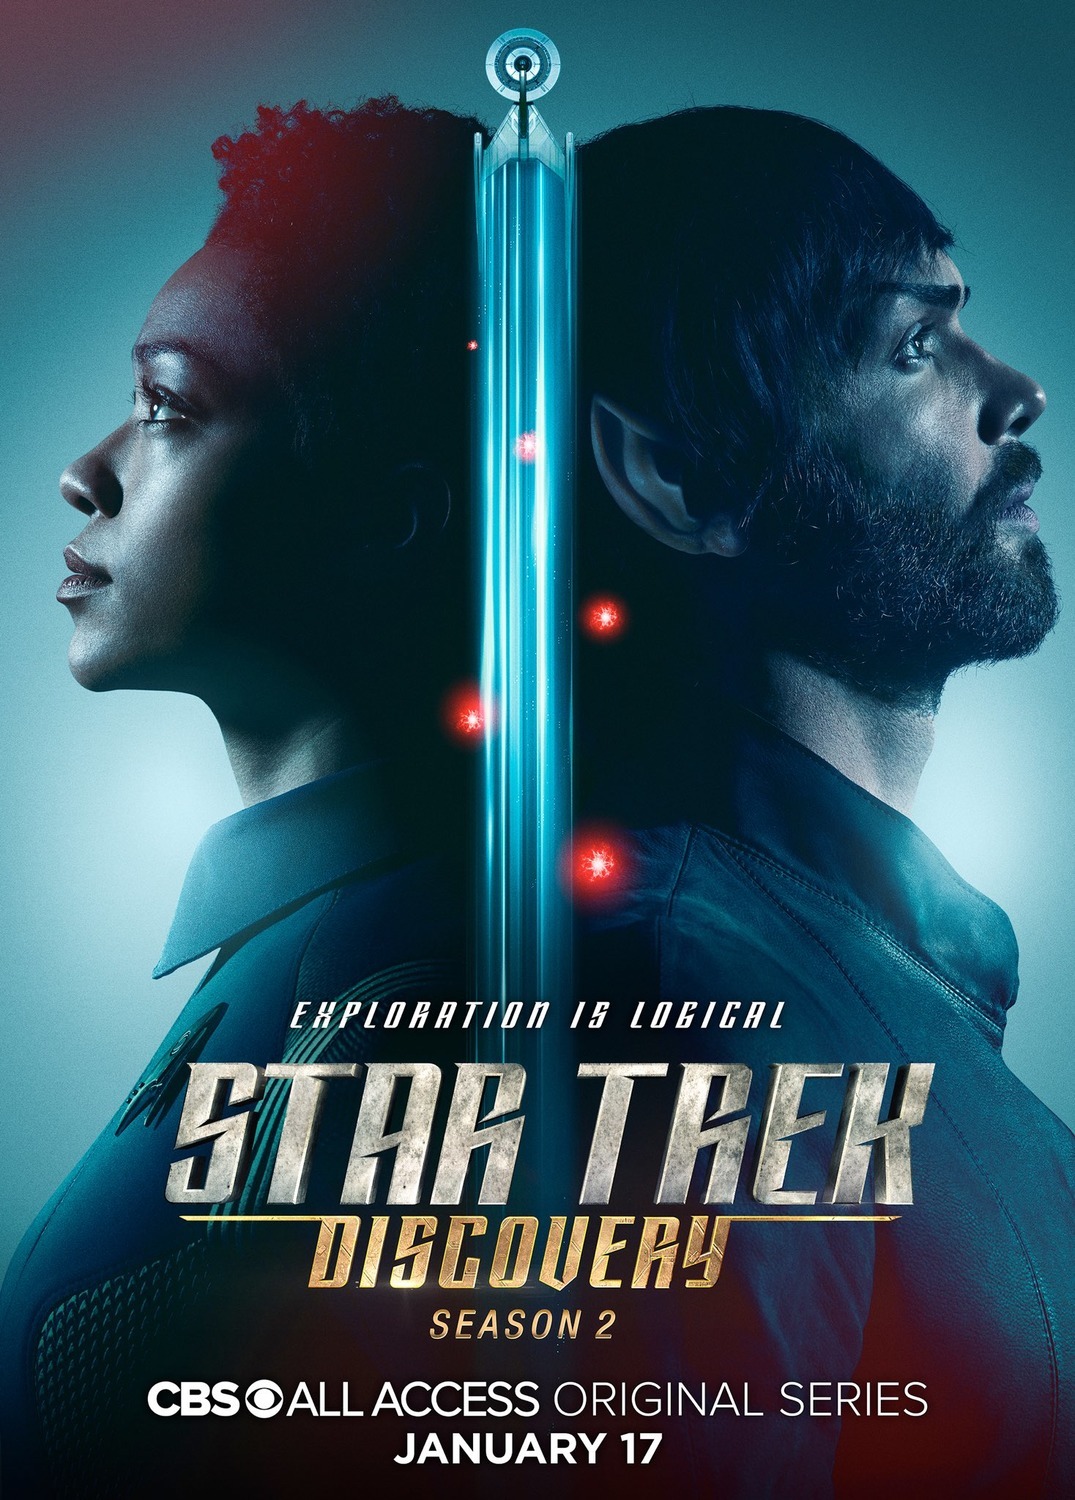 ดูหนังออนไลน์ Star Trek Discovery Season 2 EP.8 สตาร์ เทรค ดิสคัฟเวอรี่ ซีซั่นที่ 2 ตอนที่ 8